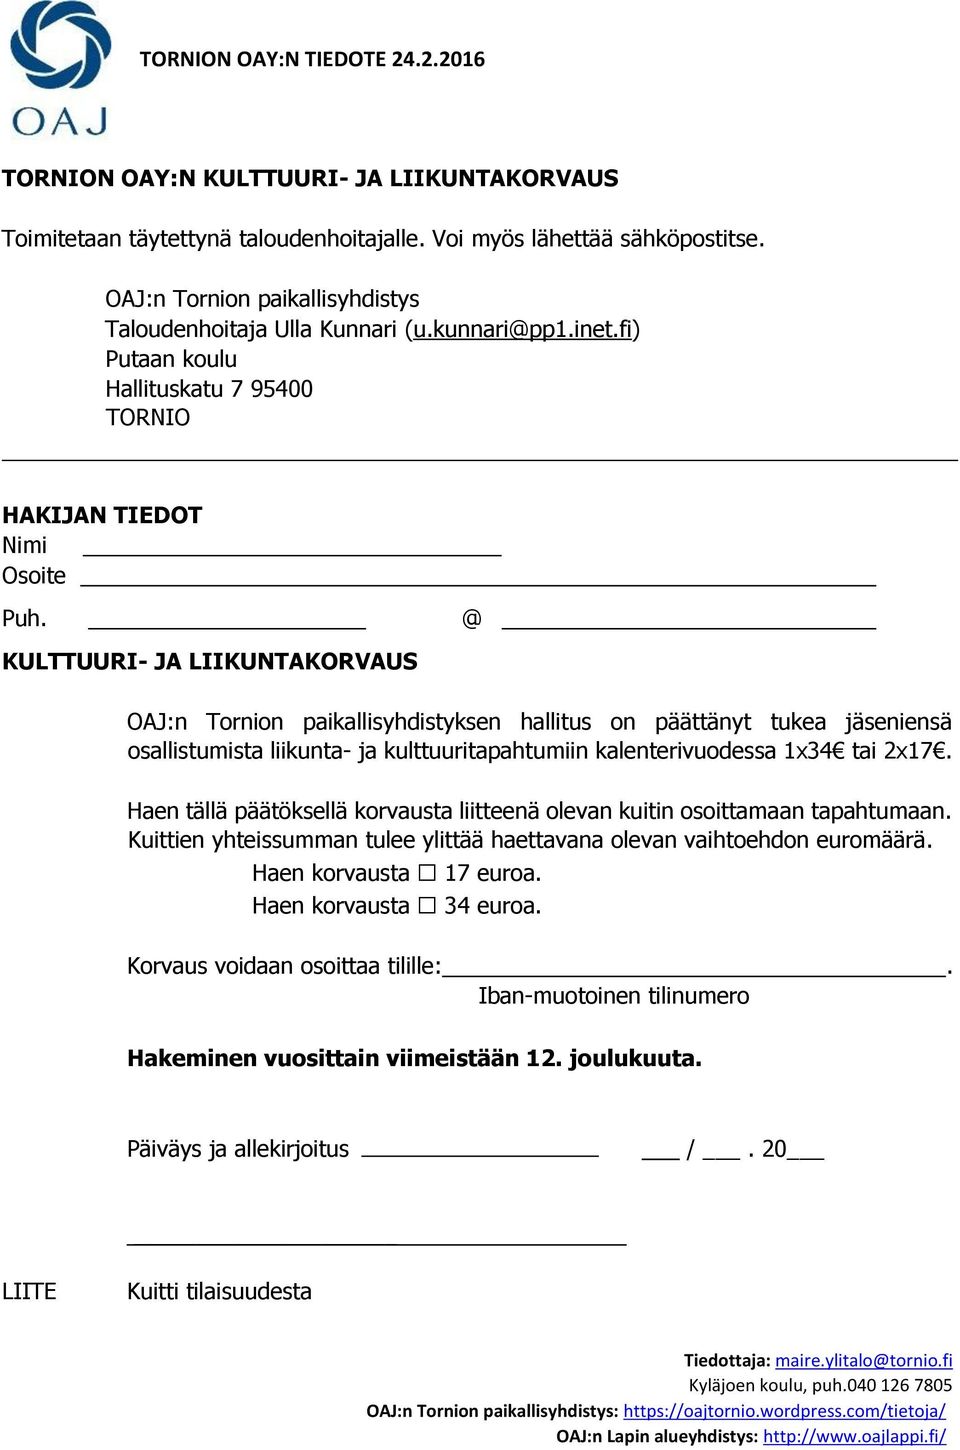 @ KULTTUURI- JA LIIKUNTAKORVAUS OAJ:n Tornion paikallisyhdistyksen hallitus on päättänyt tukea jäseniensä osallistumista liikunta- ja kulttuuritapahtumiin kalenterivuodessa 1x34 tai 2x17.